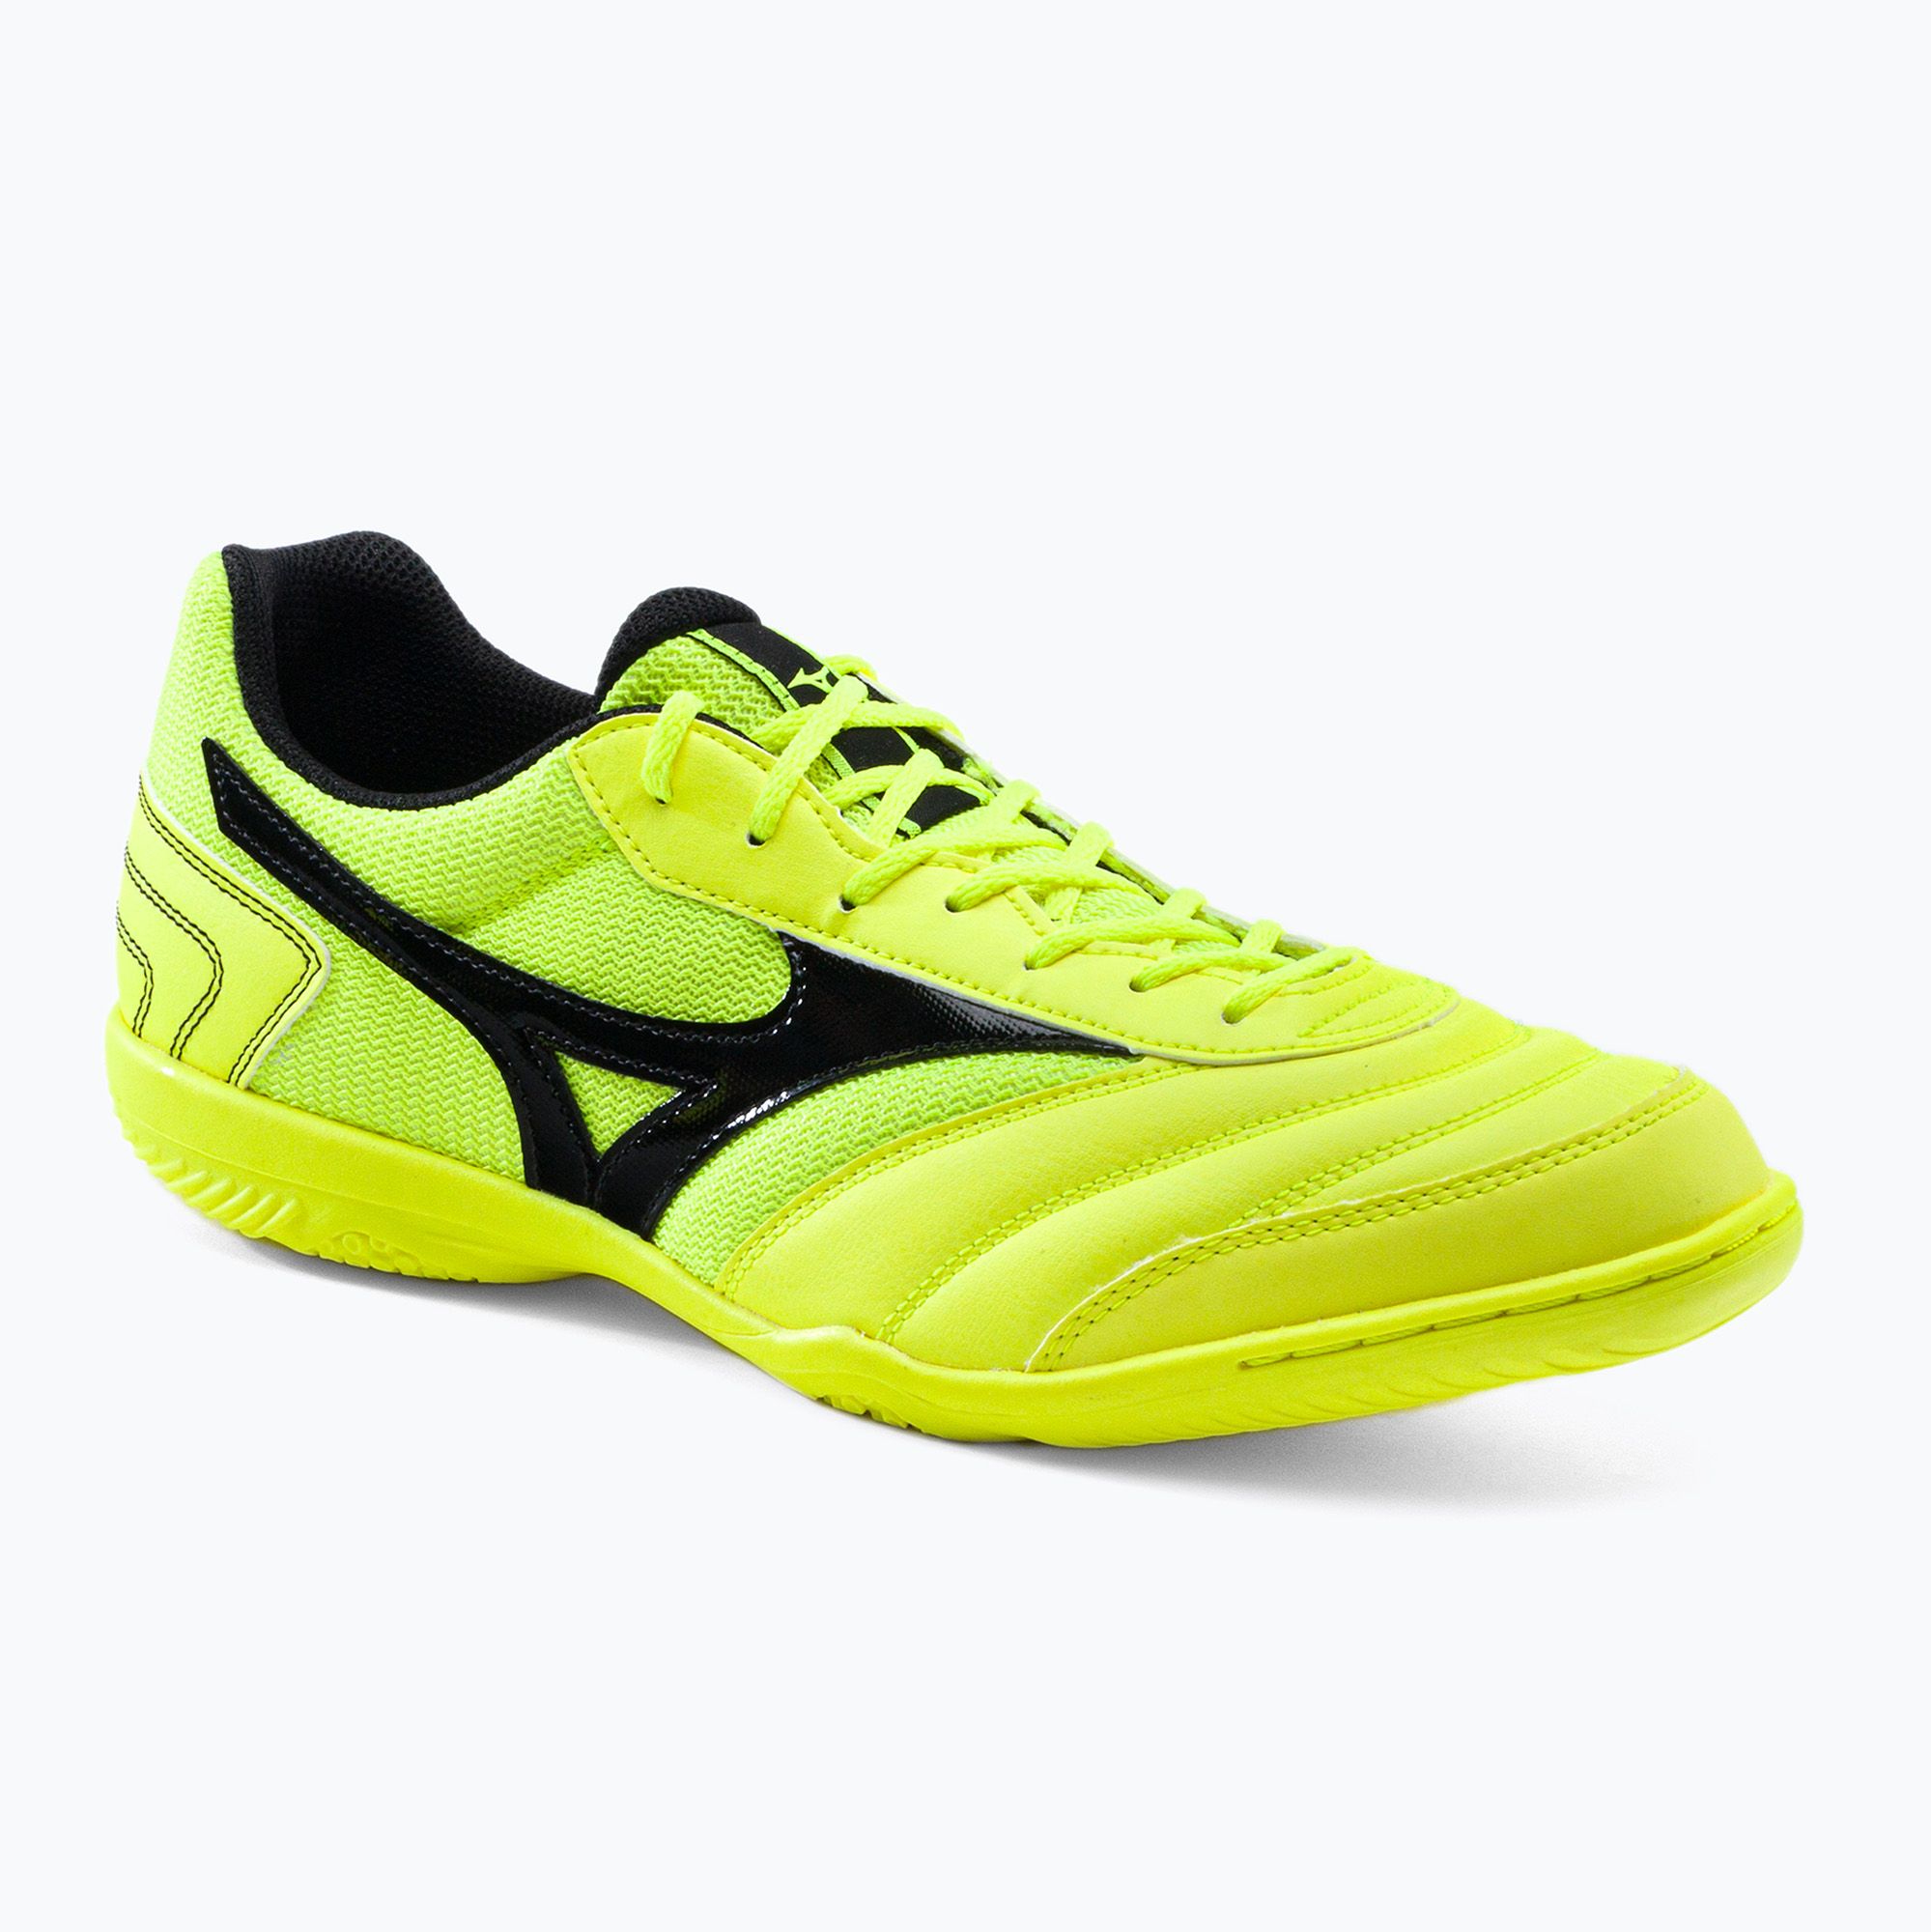 Buty piłkarskie męskie Mizuno Morelia Sala Club IN safety yellow/black